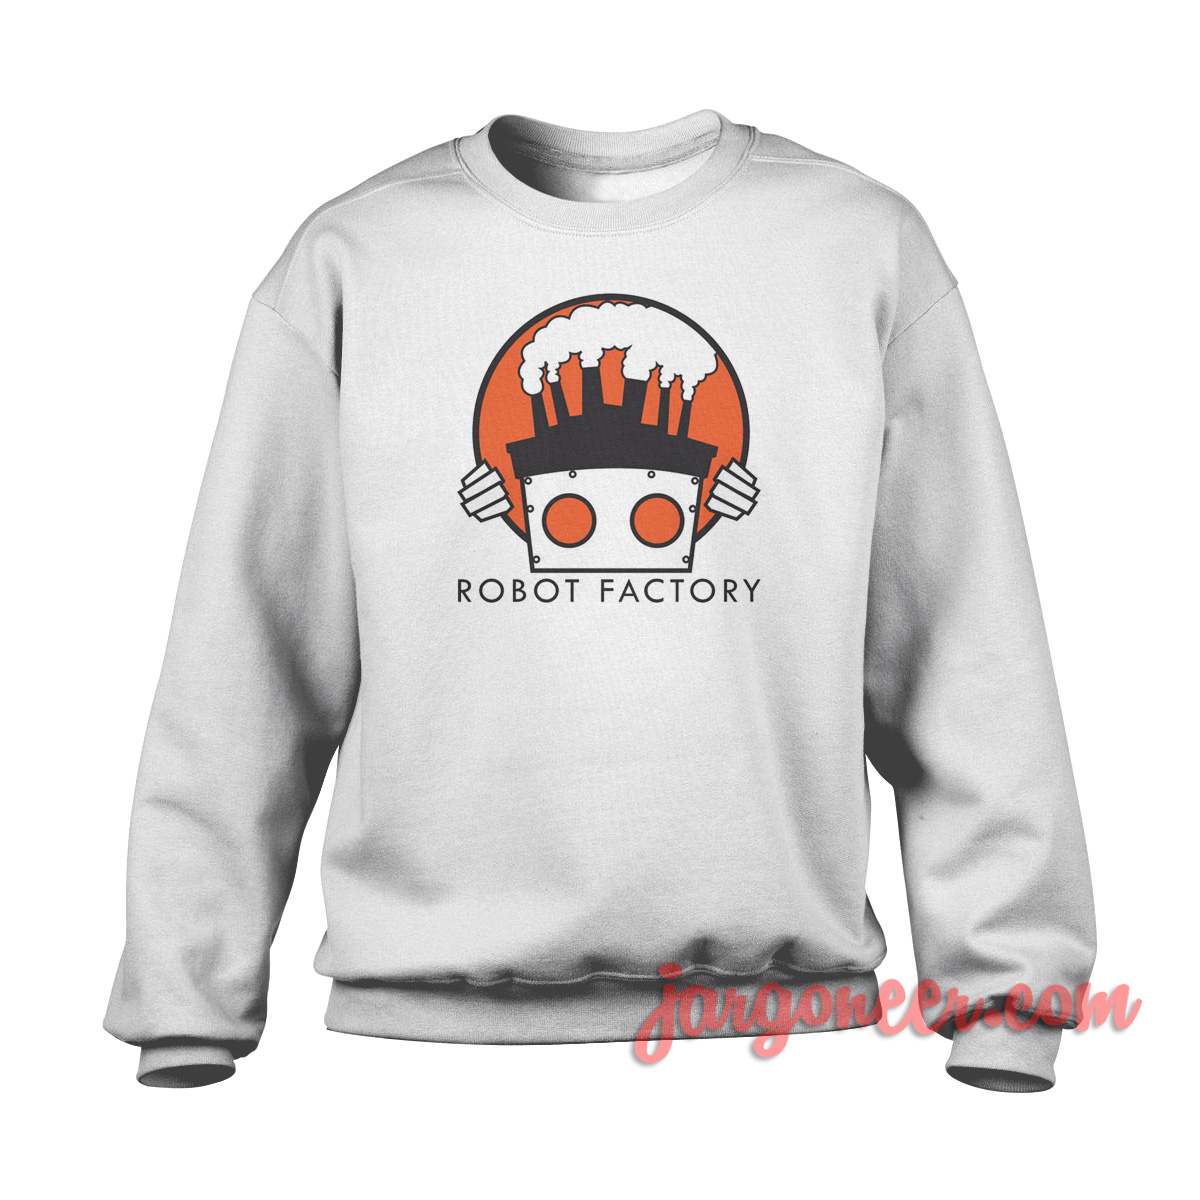 Robot Factory - Shop Unique Graphic Cool Shirt Designs